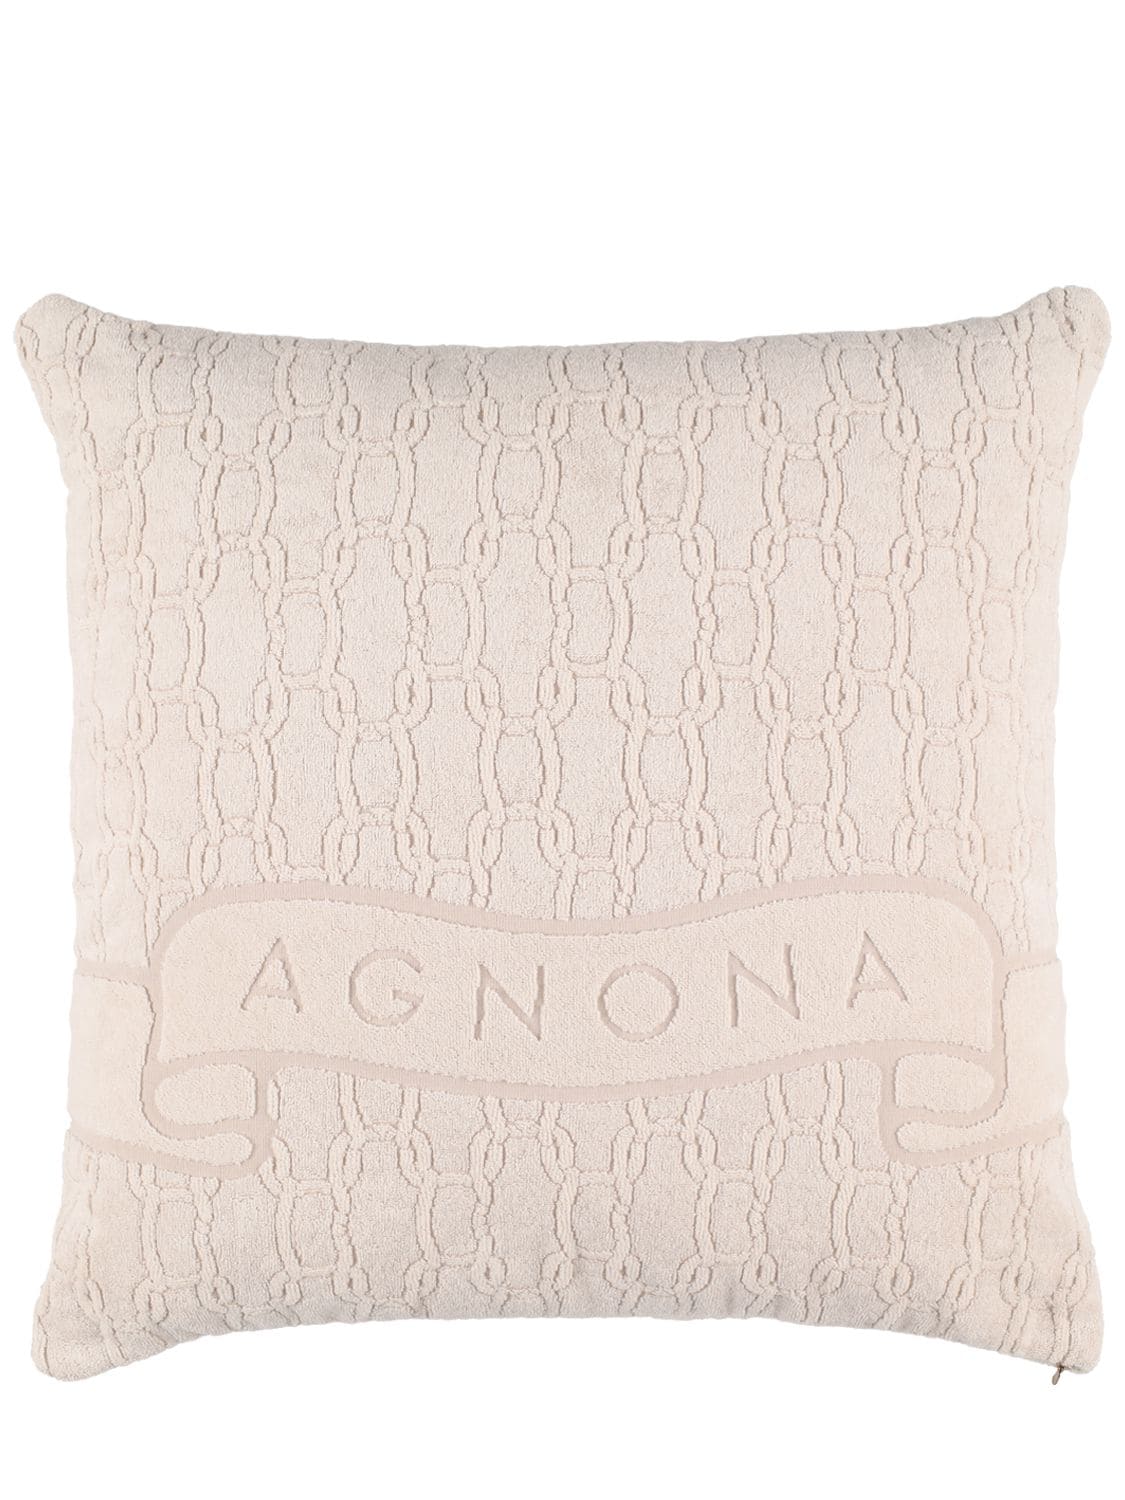 Agnona Logo Cushion In Beige